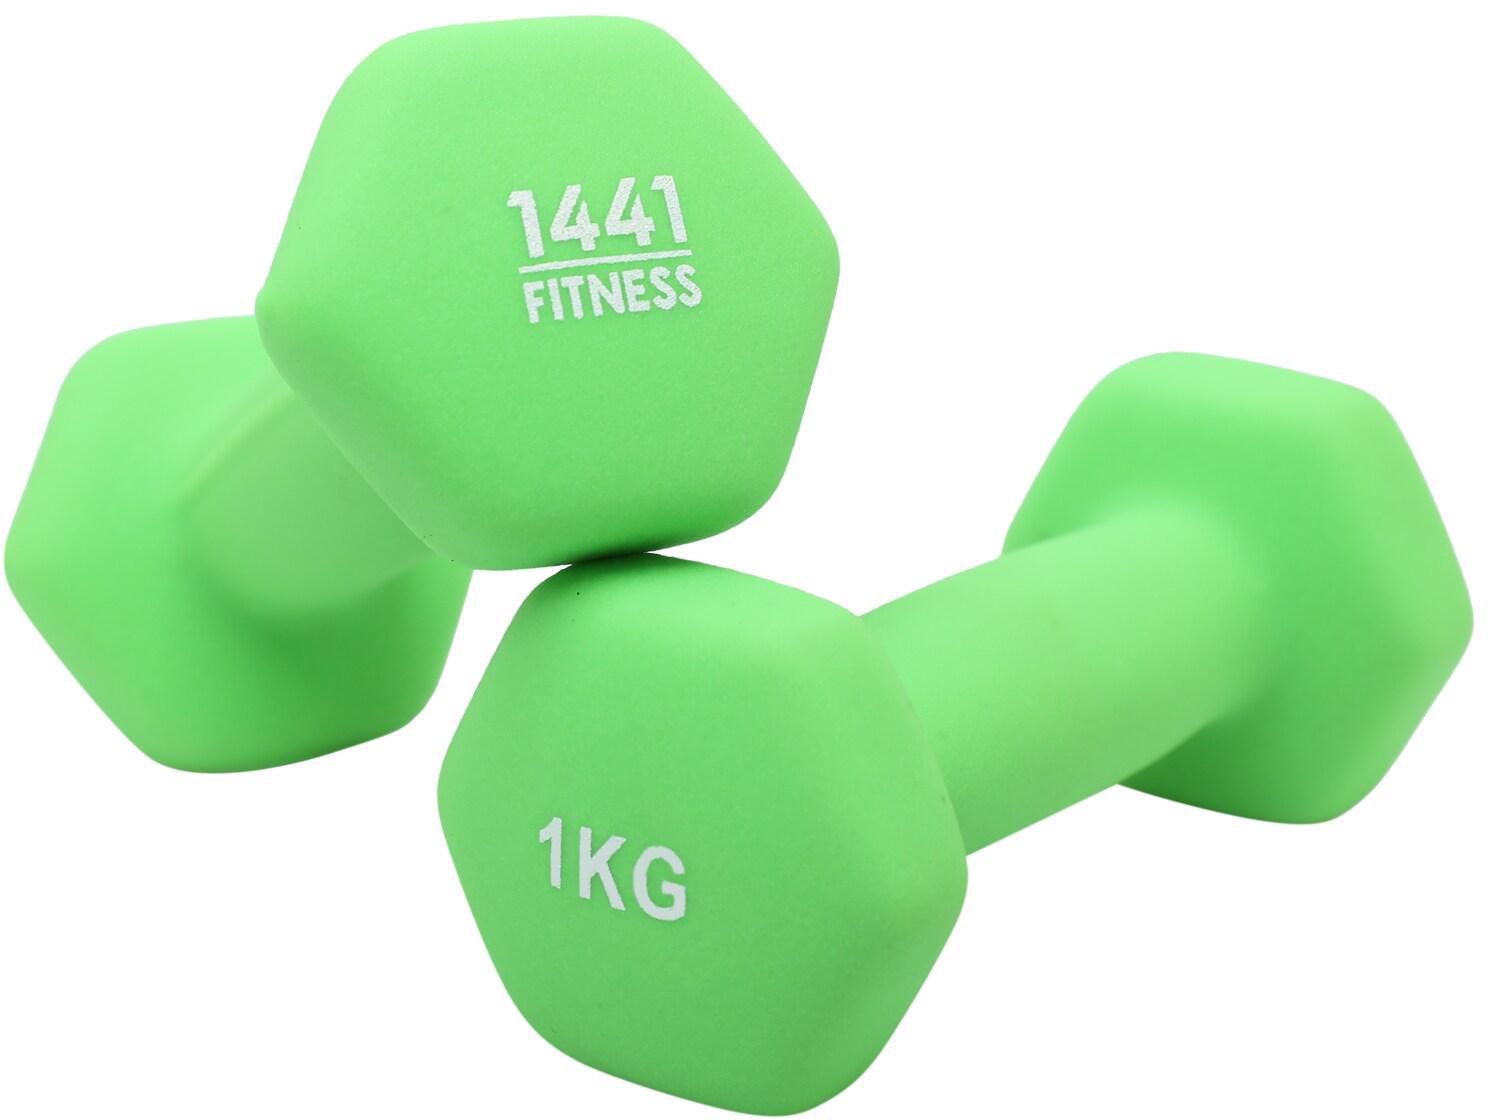 1441 Fitness Neoprene Hex Dumbbells - 1 Kg (Per Pair)